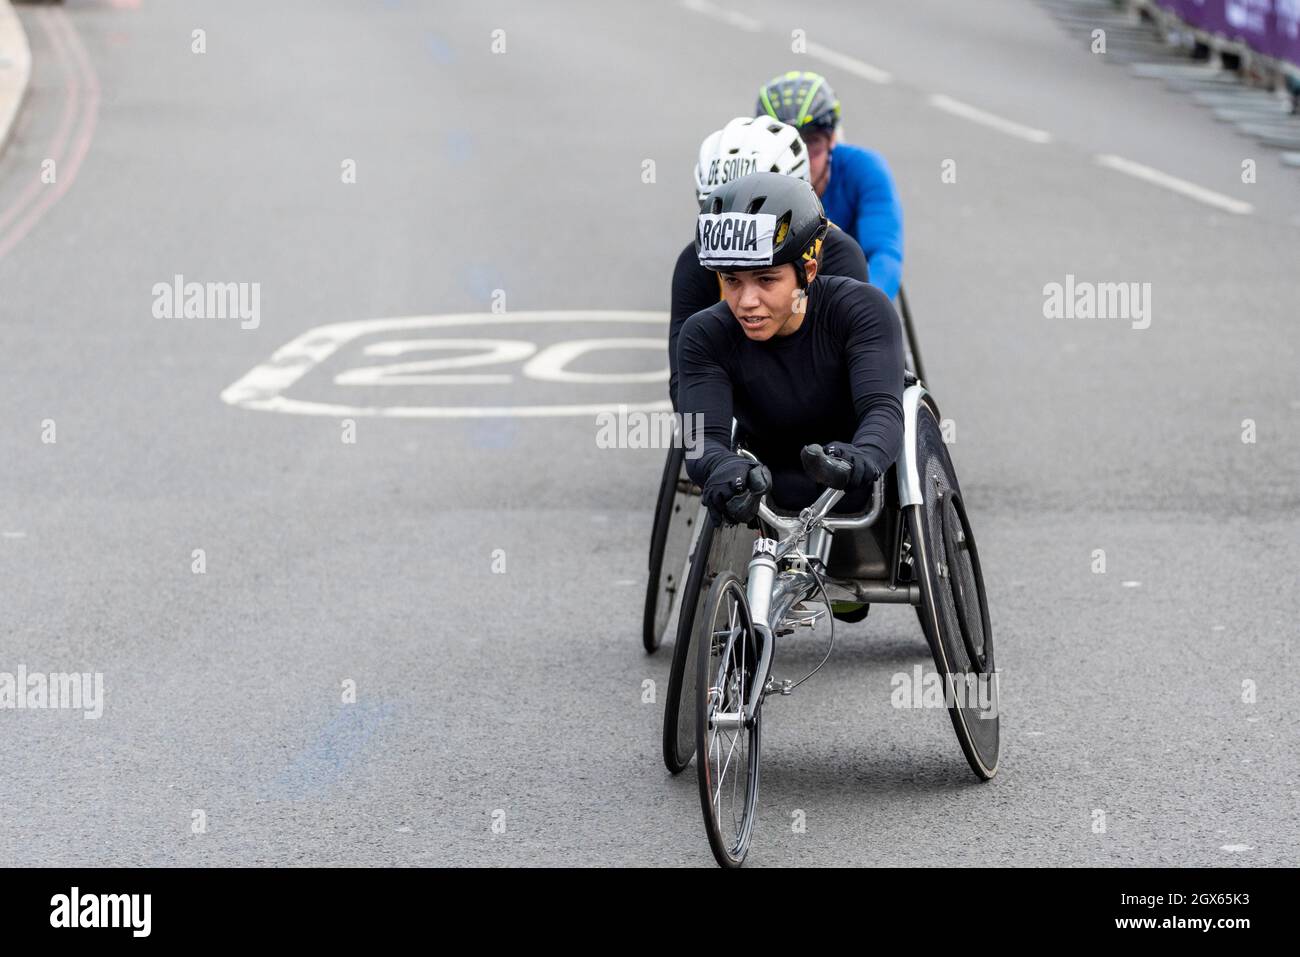 Aline Rocha dans la course en fauteuil roulant du marathon de Londres Virgin Money 2021, à Tower Hill, Londres, Royaume-Uni.Athlète en fauteuil roulant Banque D'Images